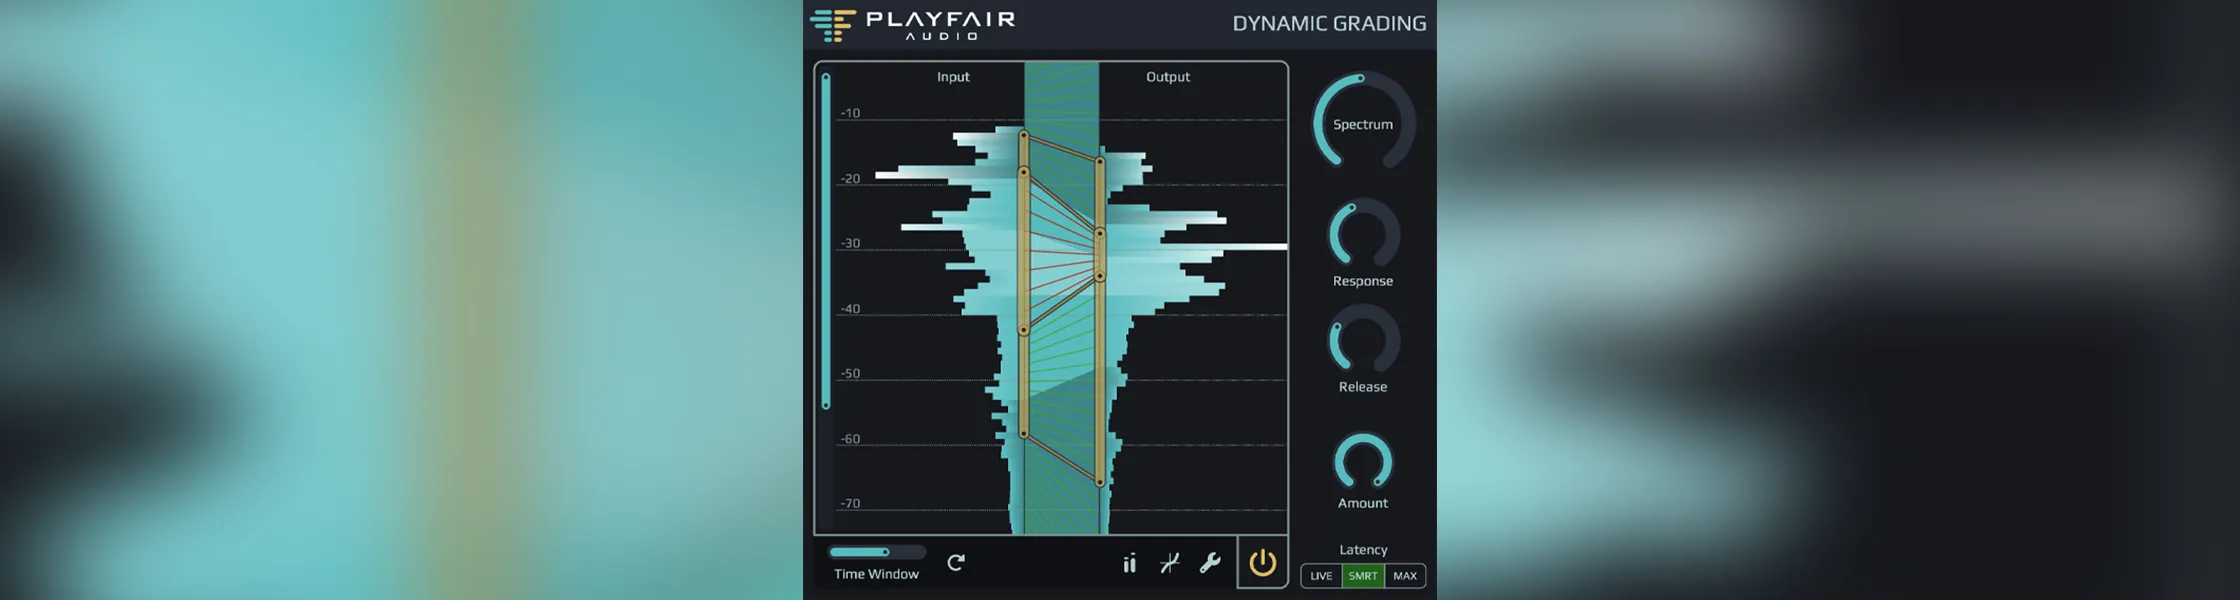 دانلود Playfair Audio Dynamic Grading v1.2.6 REPACK-R2R